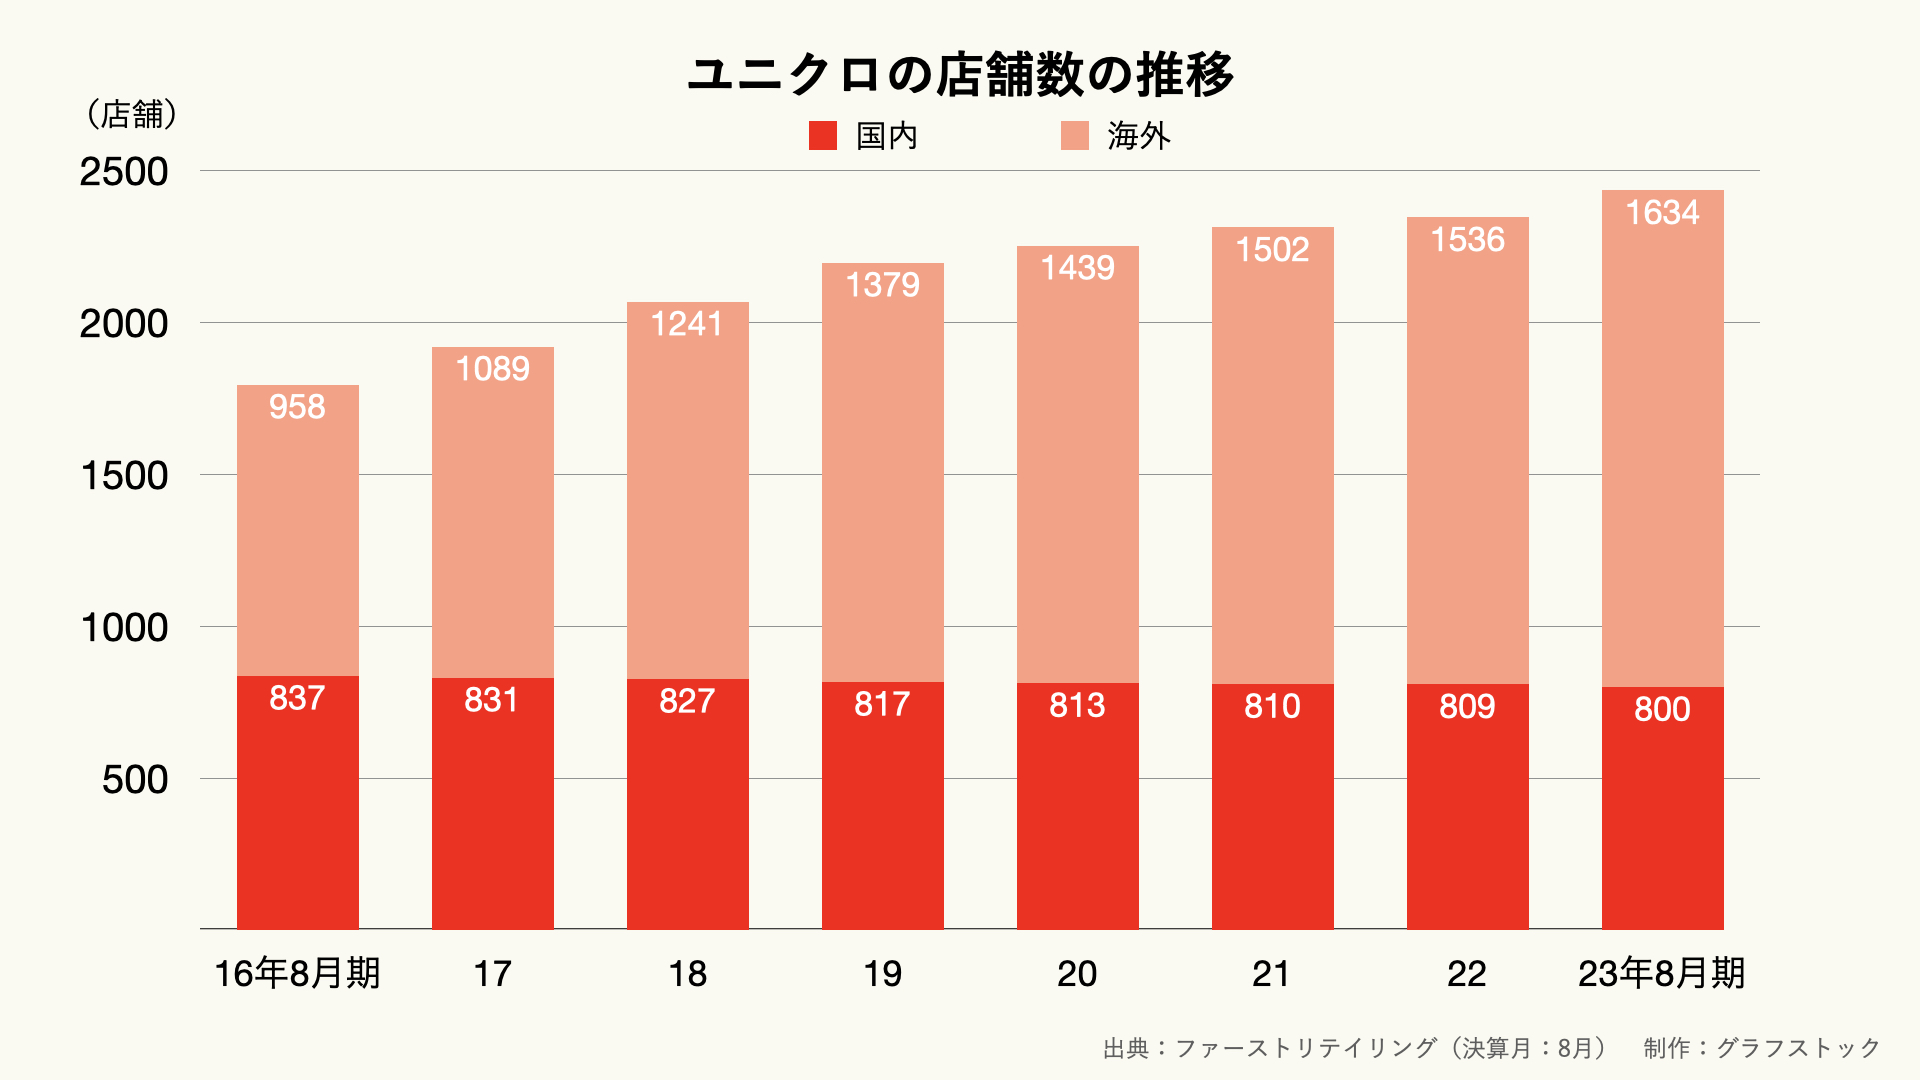 ユニクロの店舗数の推移のグラフ